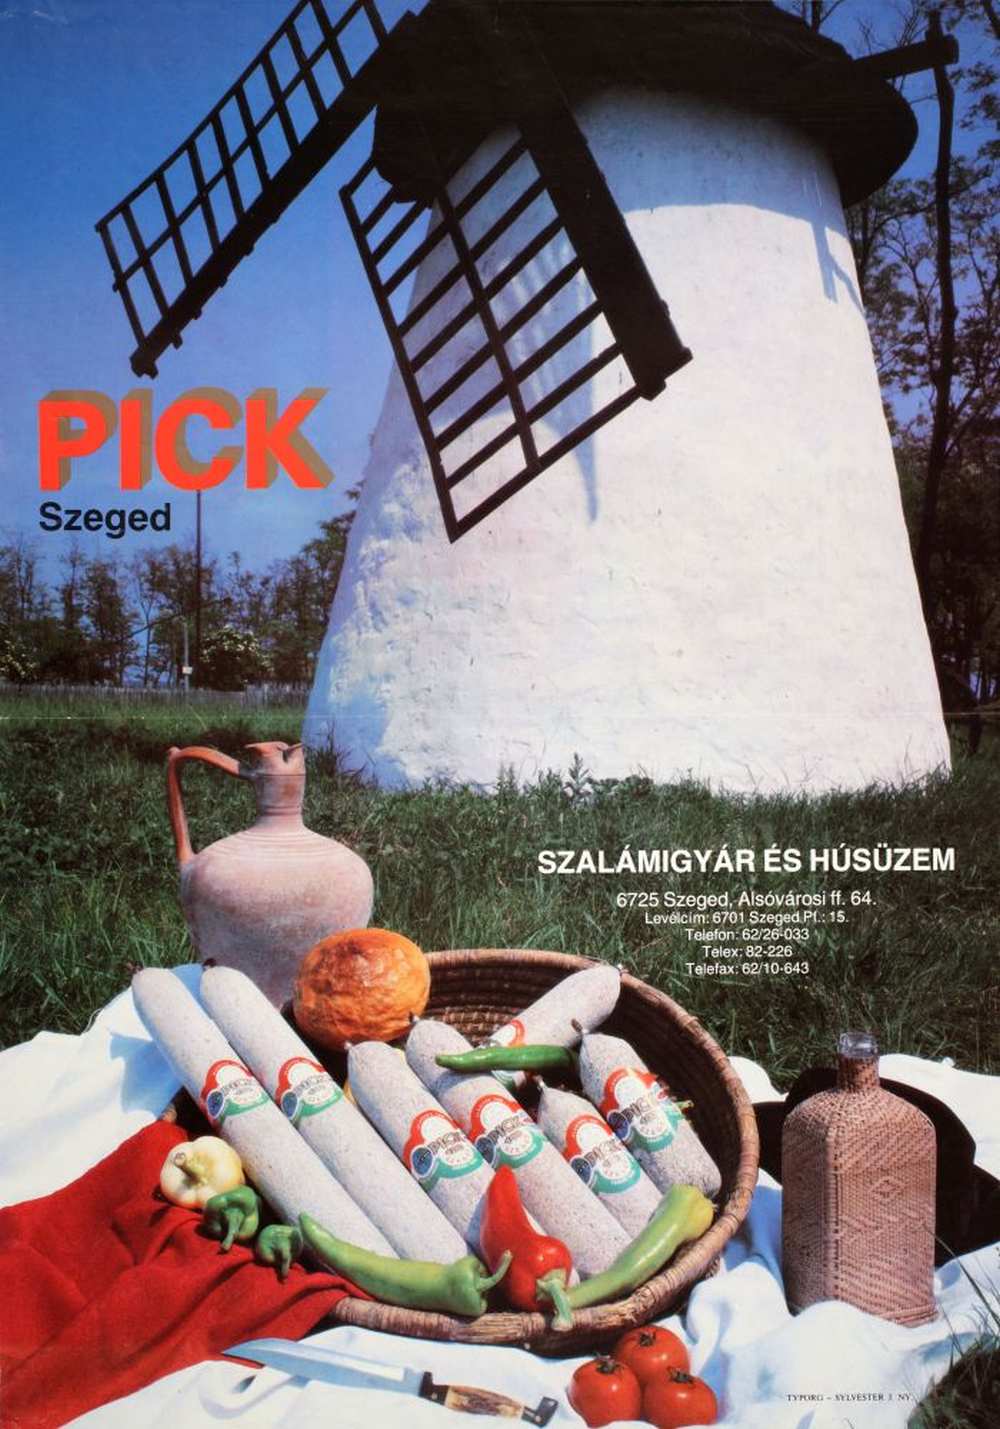 Pick Szeged. Plakát, [1990] – Térkép-, Plakát- és Kisnyomtatványtár. Jelzet: PKG.1990/872